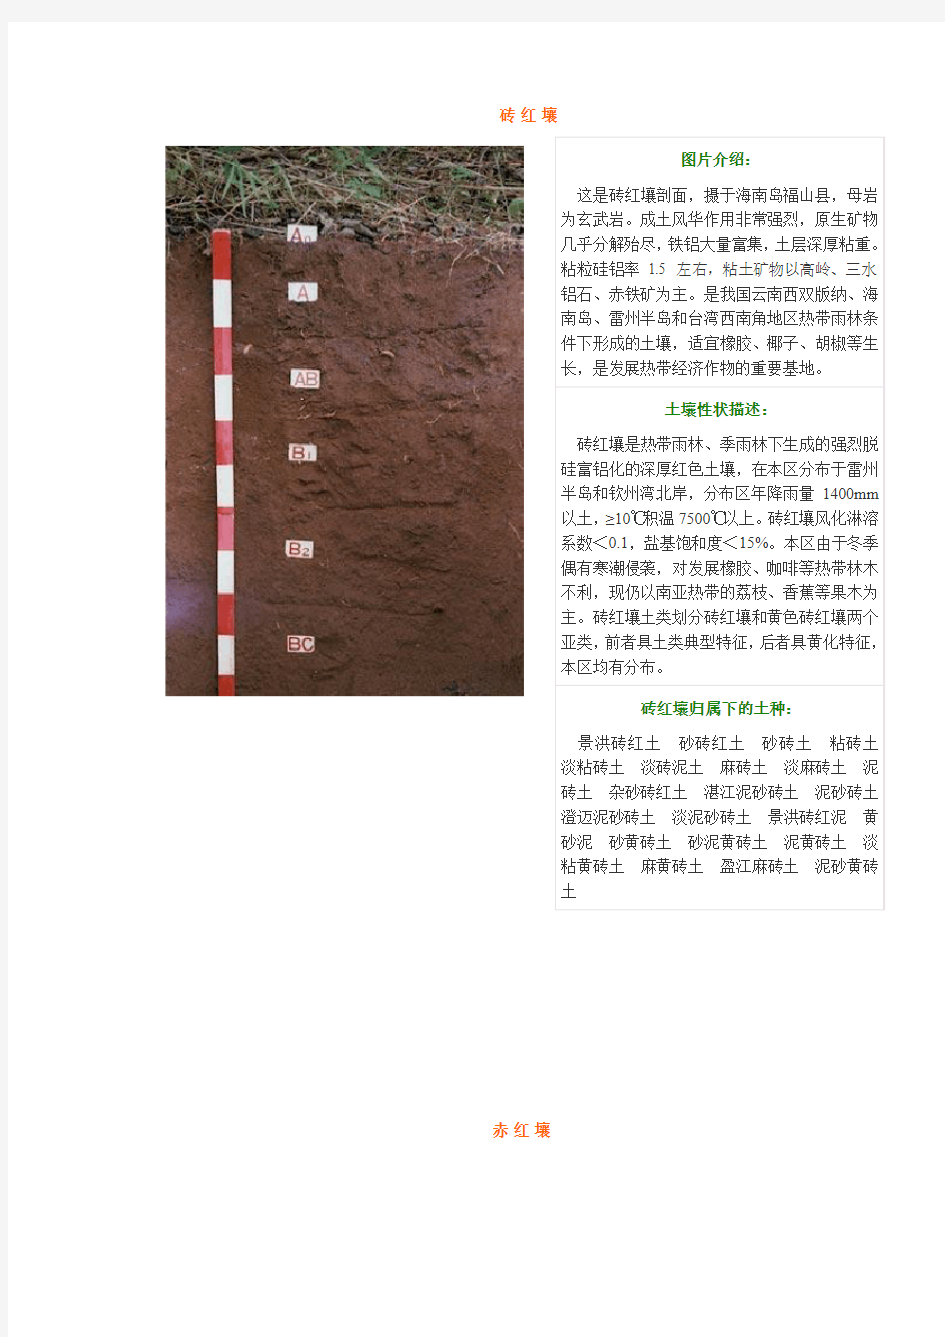 中国土壤类型